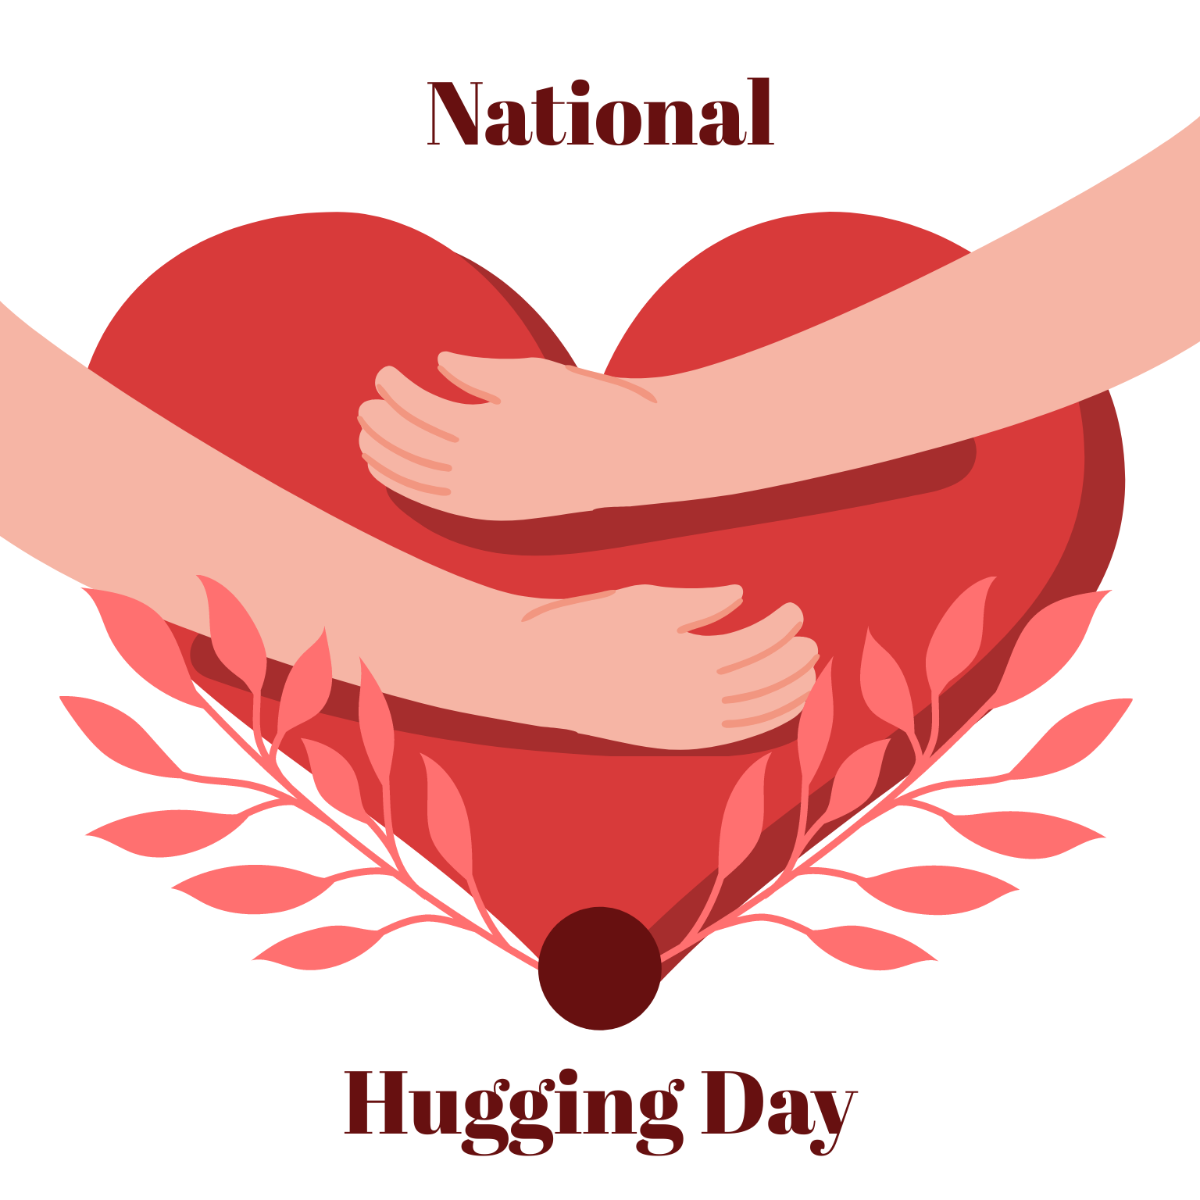 National Hugging Day Illustration